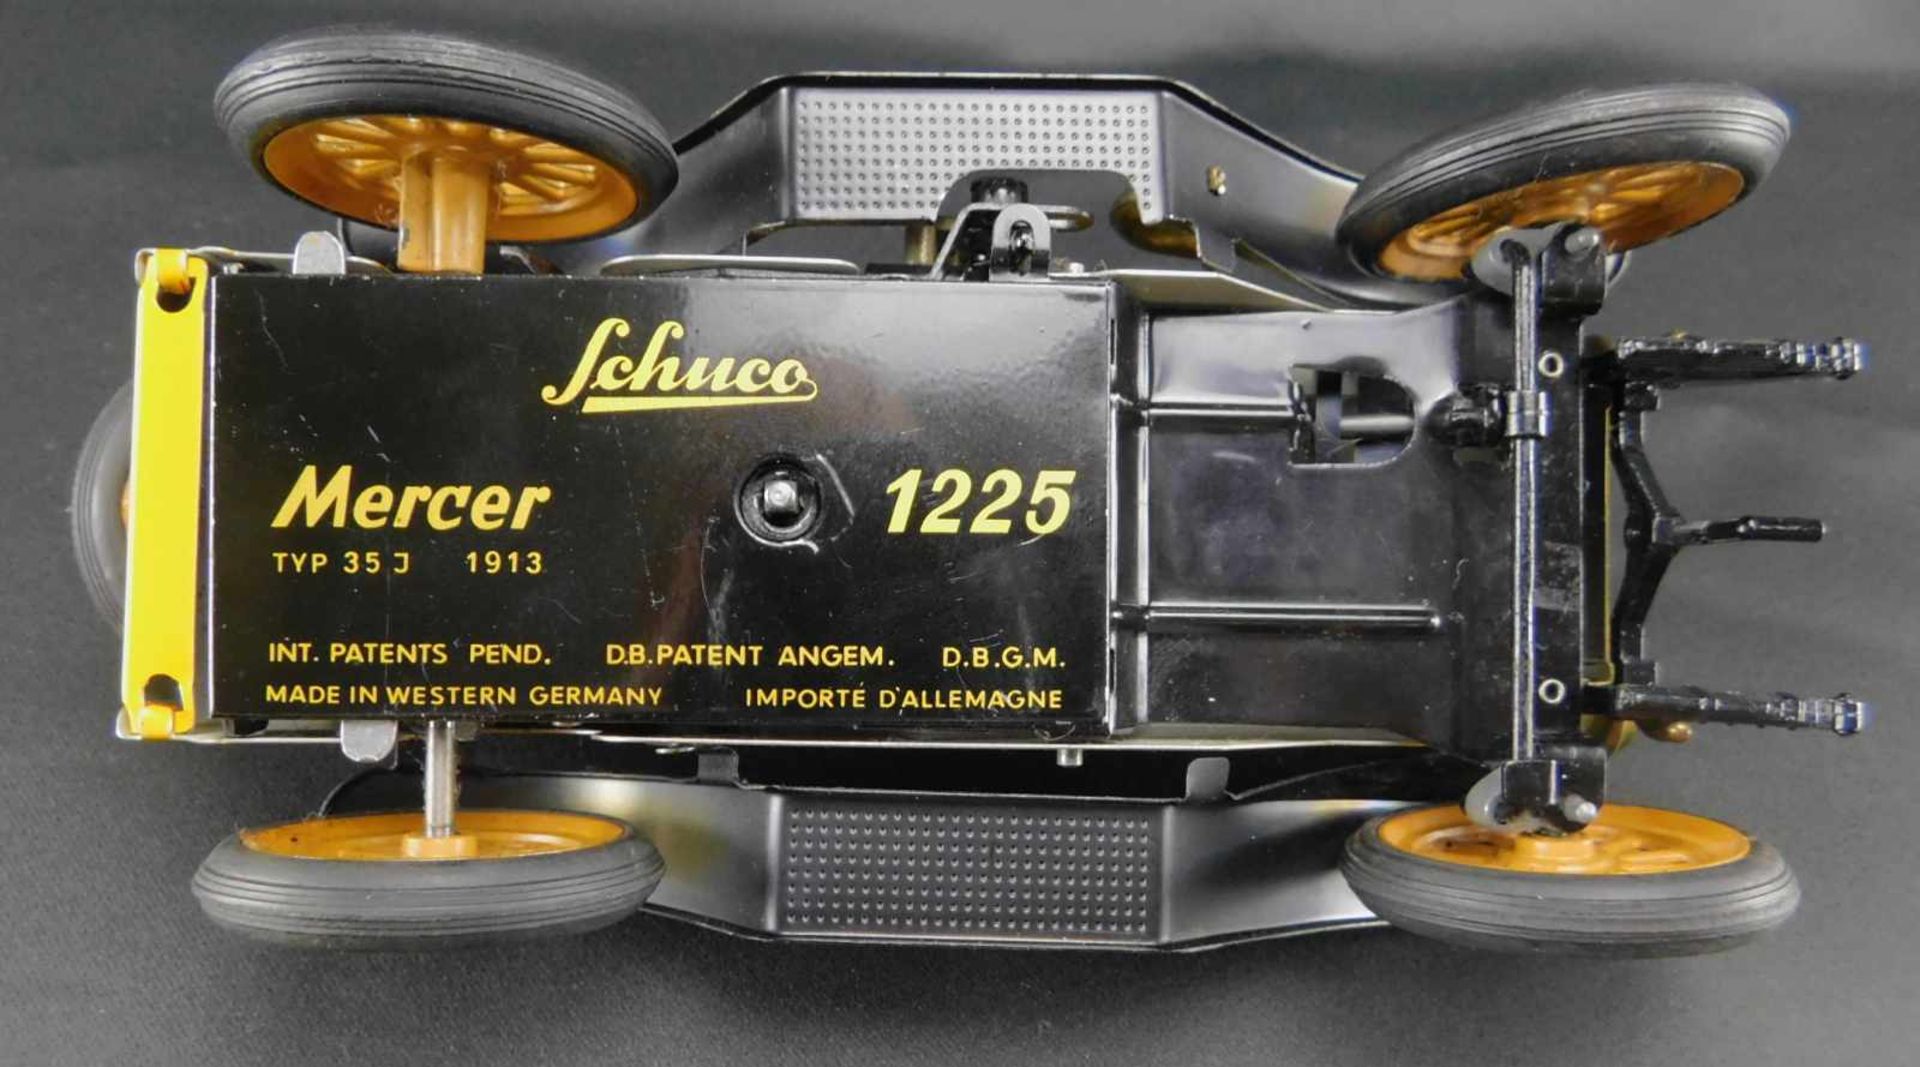 Modellauto Schuco, Mercer 1225 Typ 35J, 1913, Blechmodellmit Aufzug und Schlüssel. Wagen fährt - Bild 3 aus 4